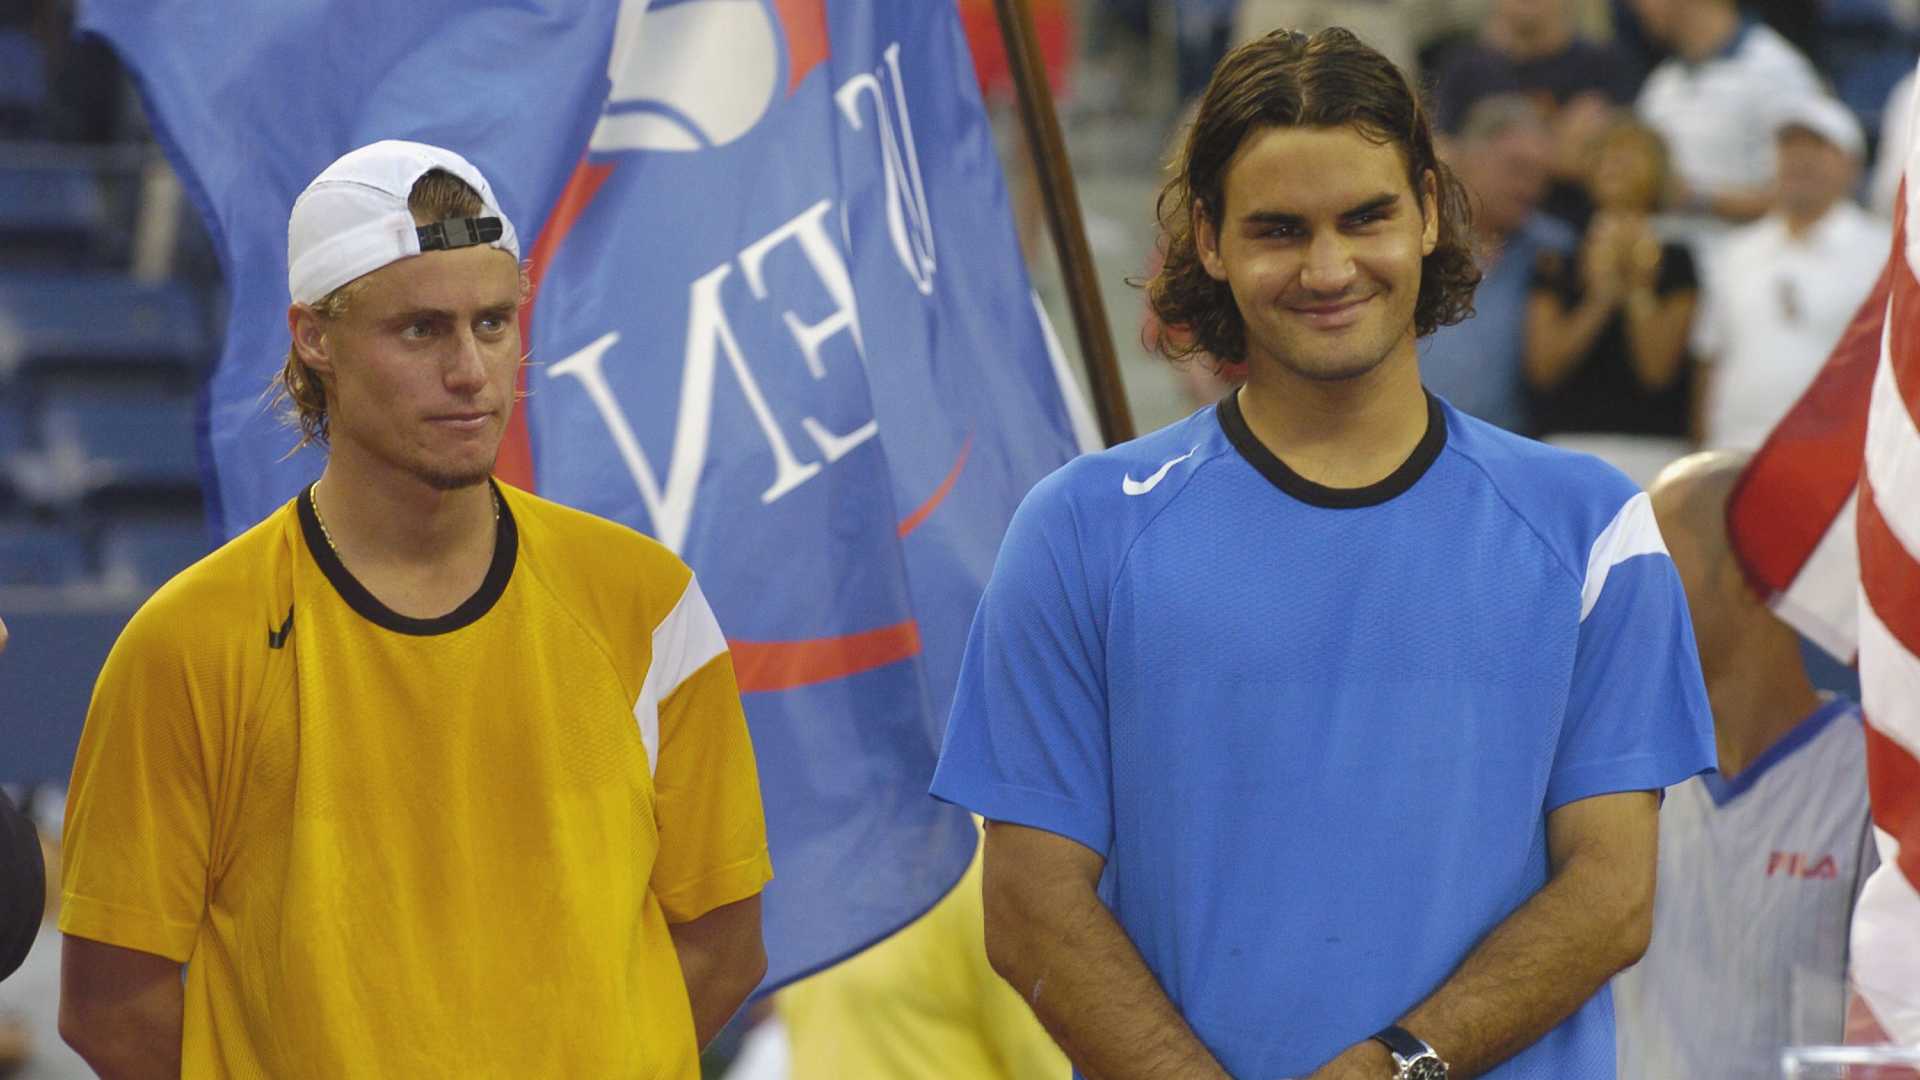 Lleyton Hewitt and Roger Federer